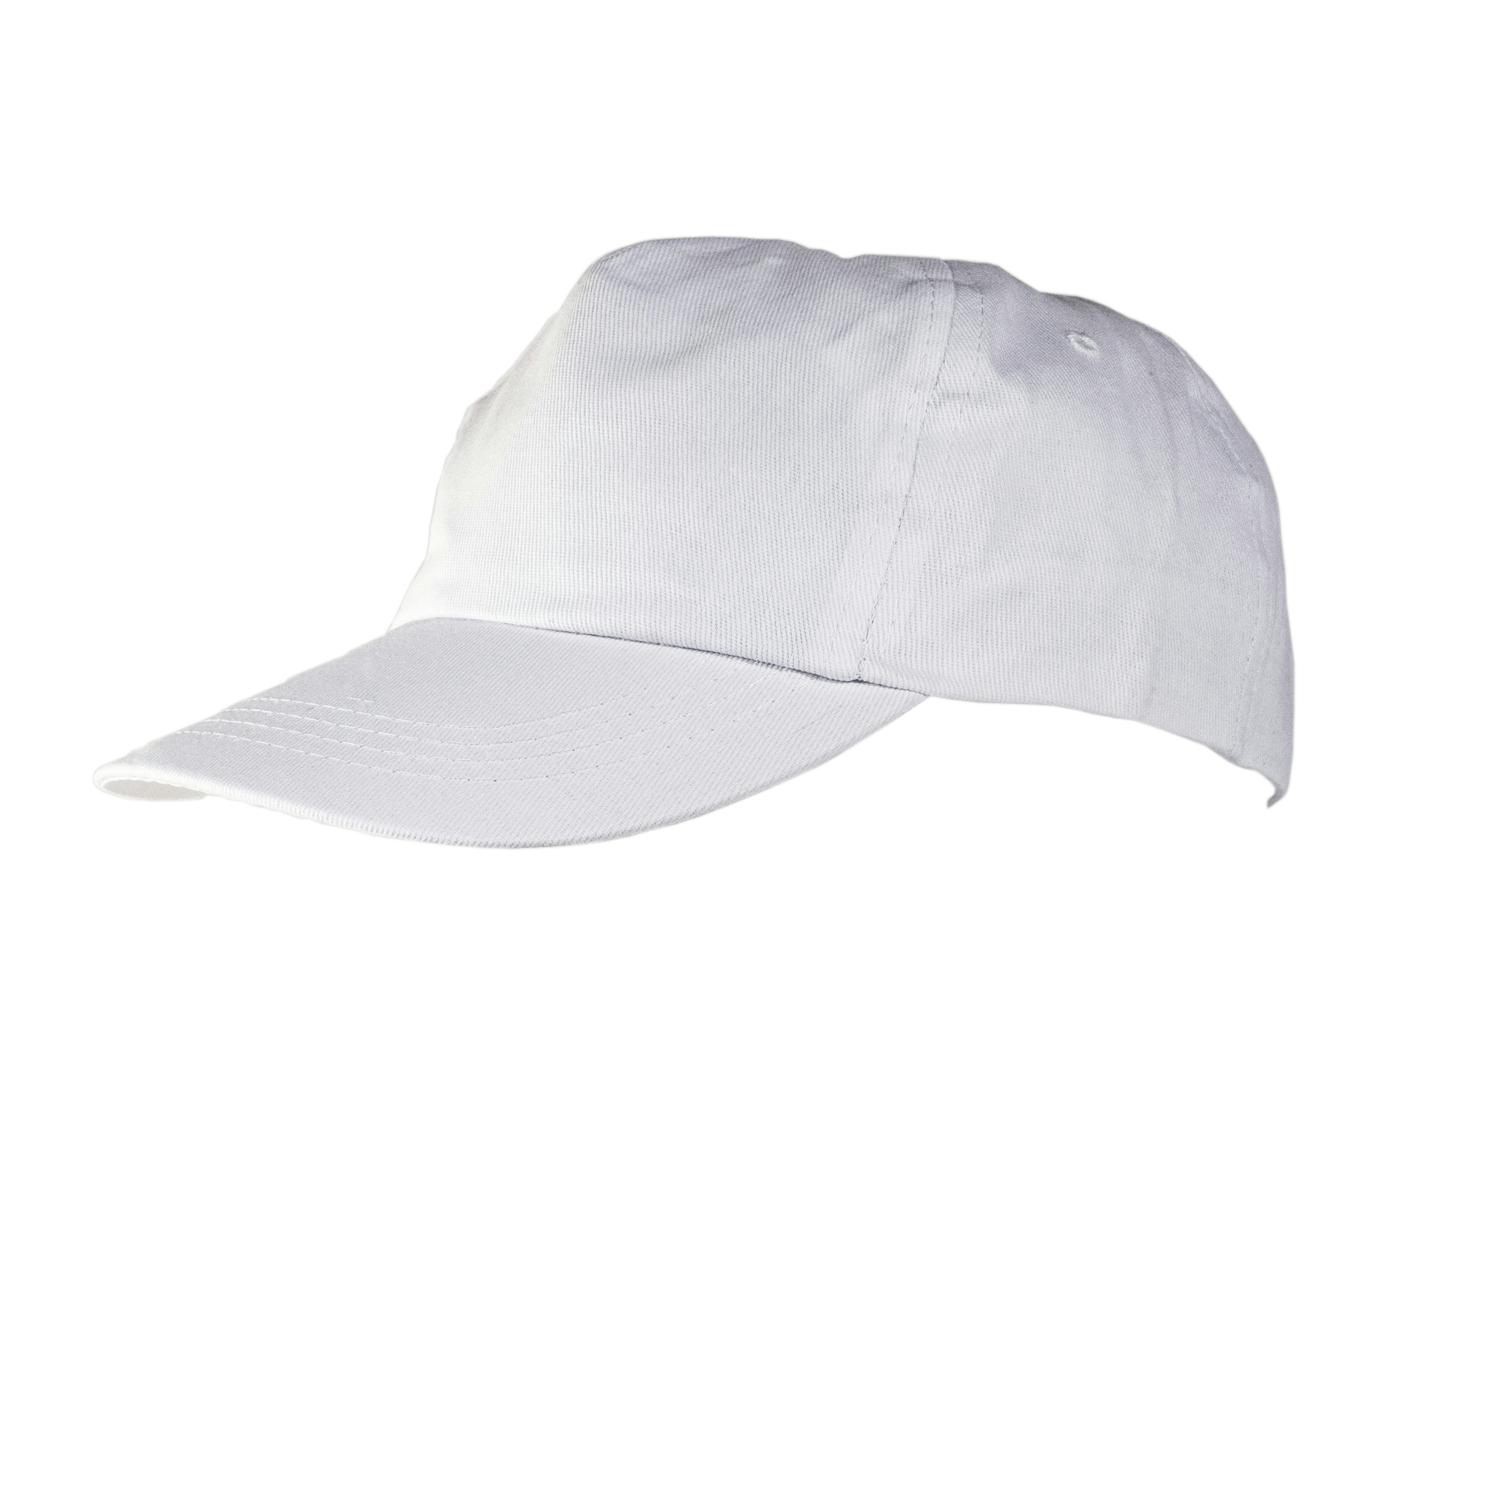 כובע מצחיה פוליאסטר עם סוגר טיקטק אחורי. 
מתאים לסובלימציה.